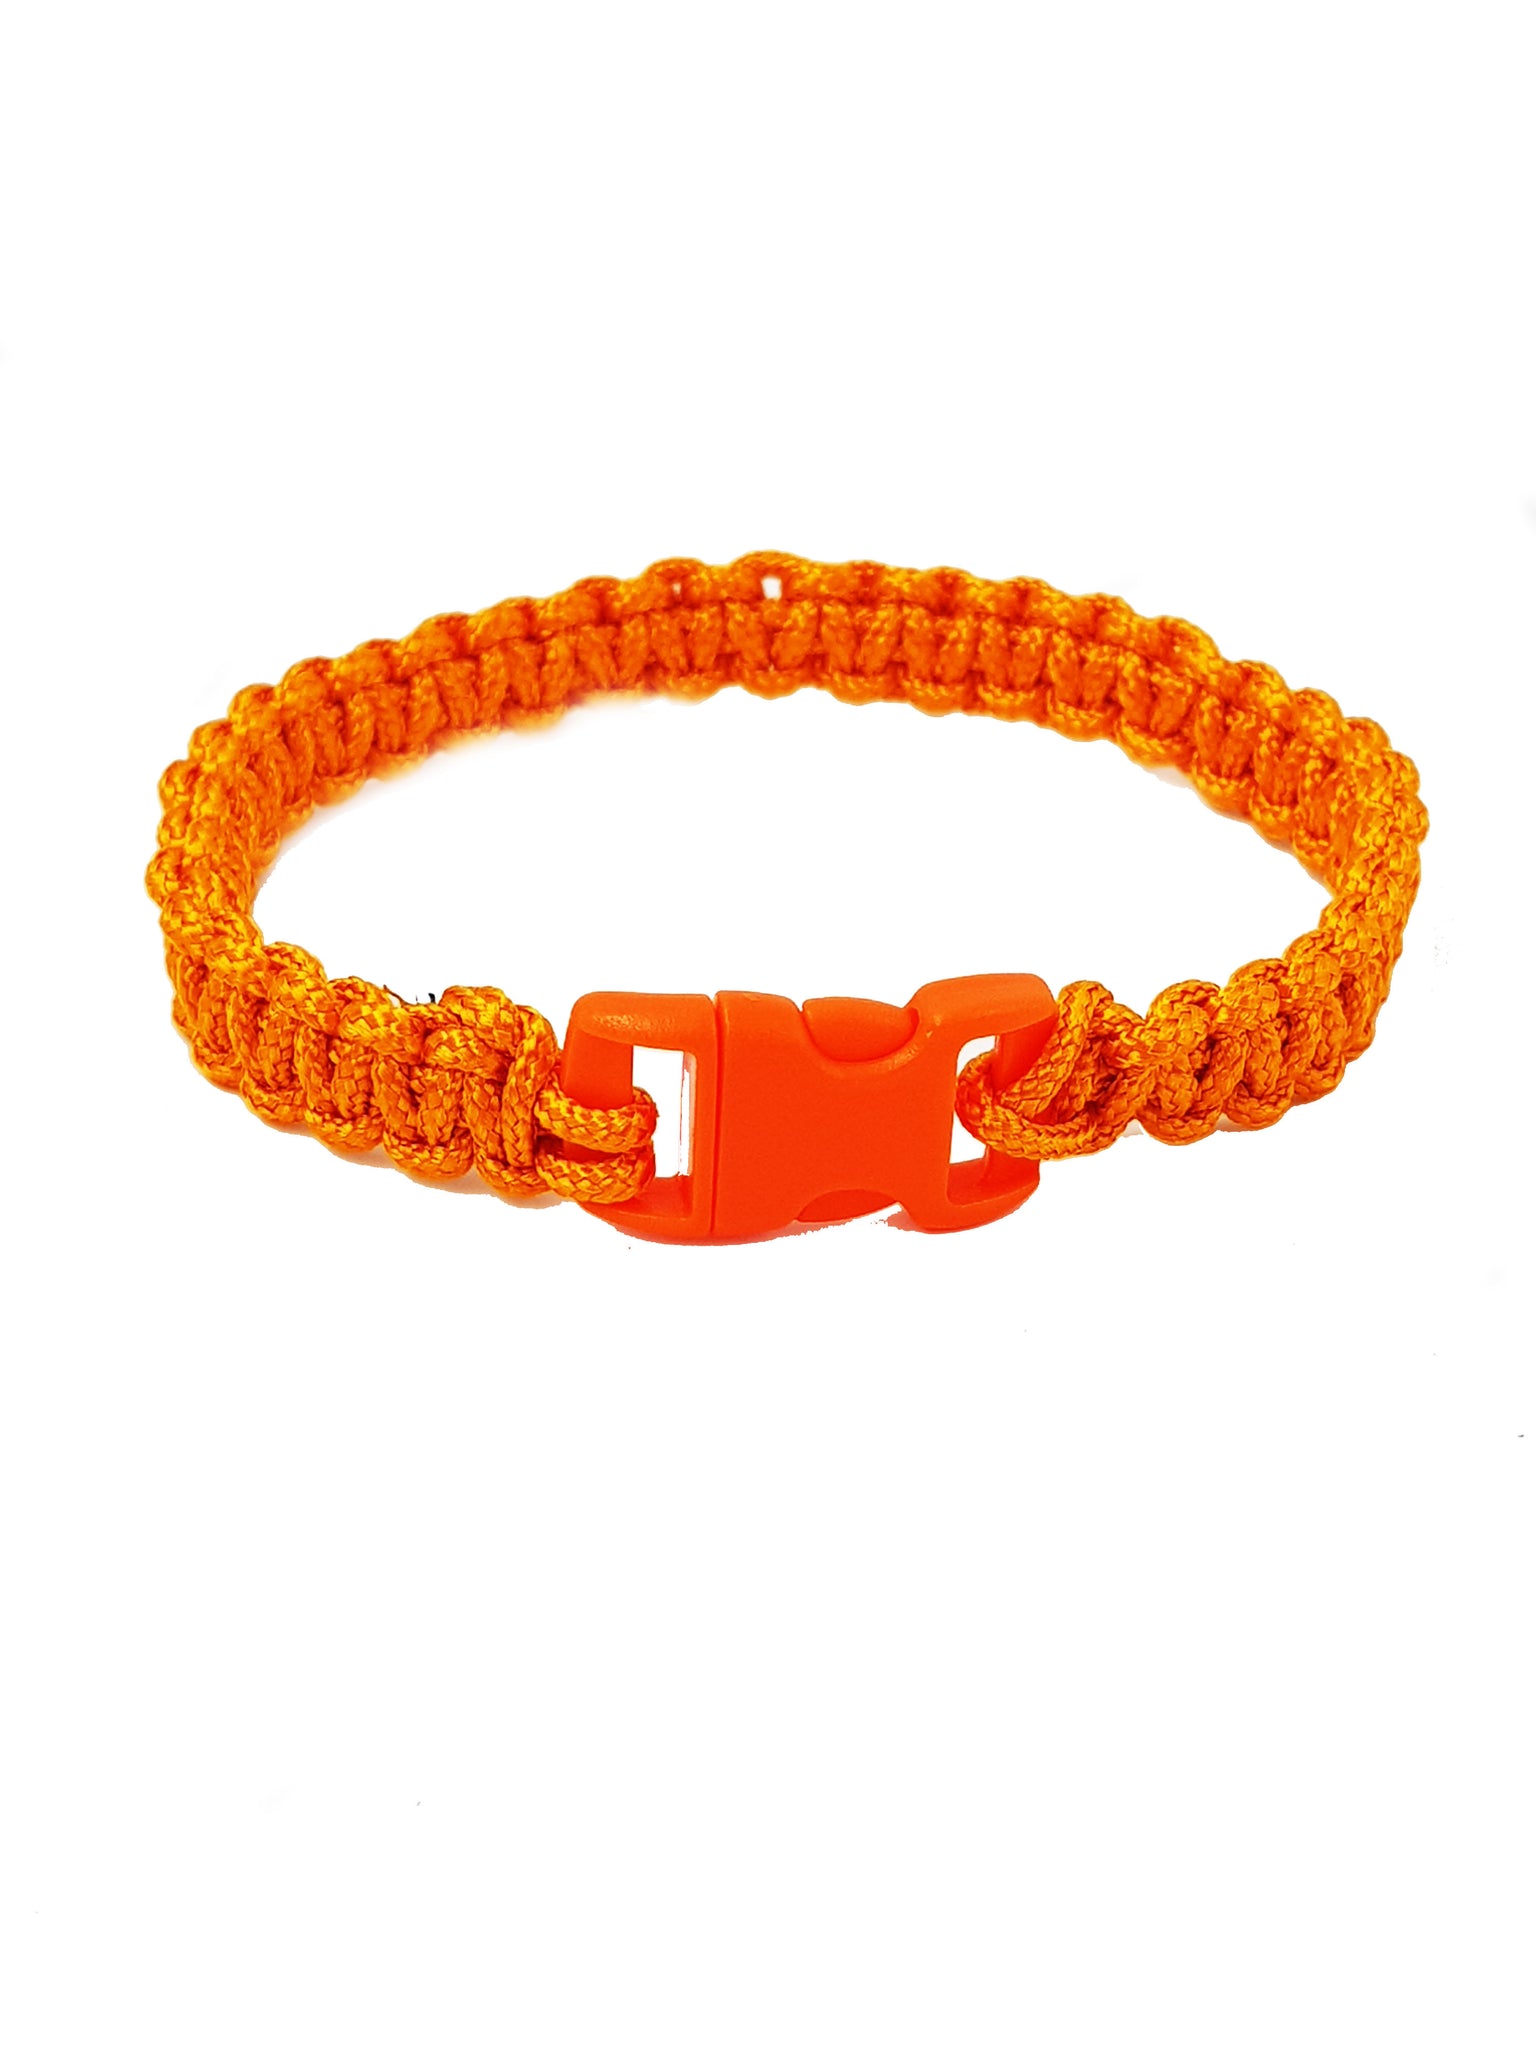 Paracord Armband Orange dünn - "Ich bin ehrlich" - hallokindershop